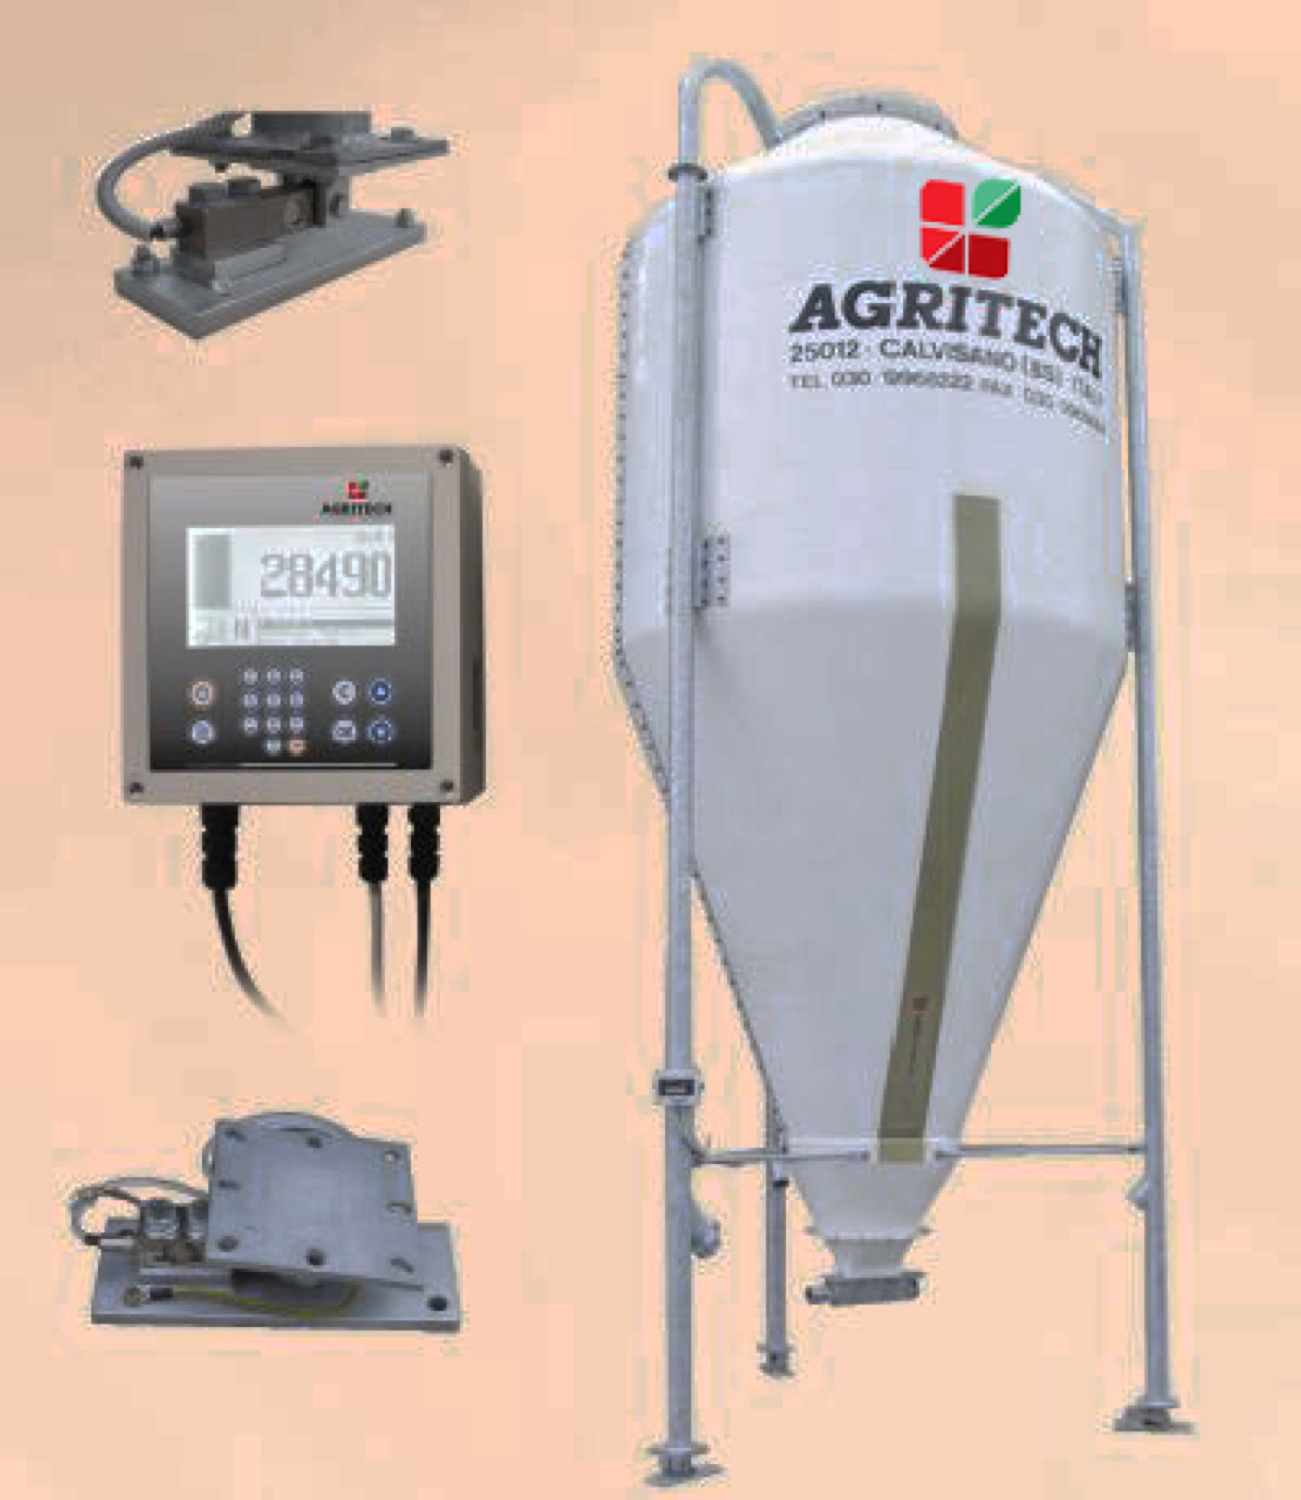 Agritech ha sviluppato una serie di sistemi elettronici su celle in acciaio inox per la pesatura dei silos